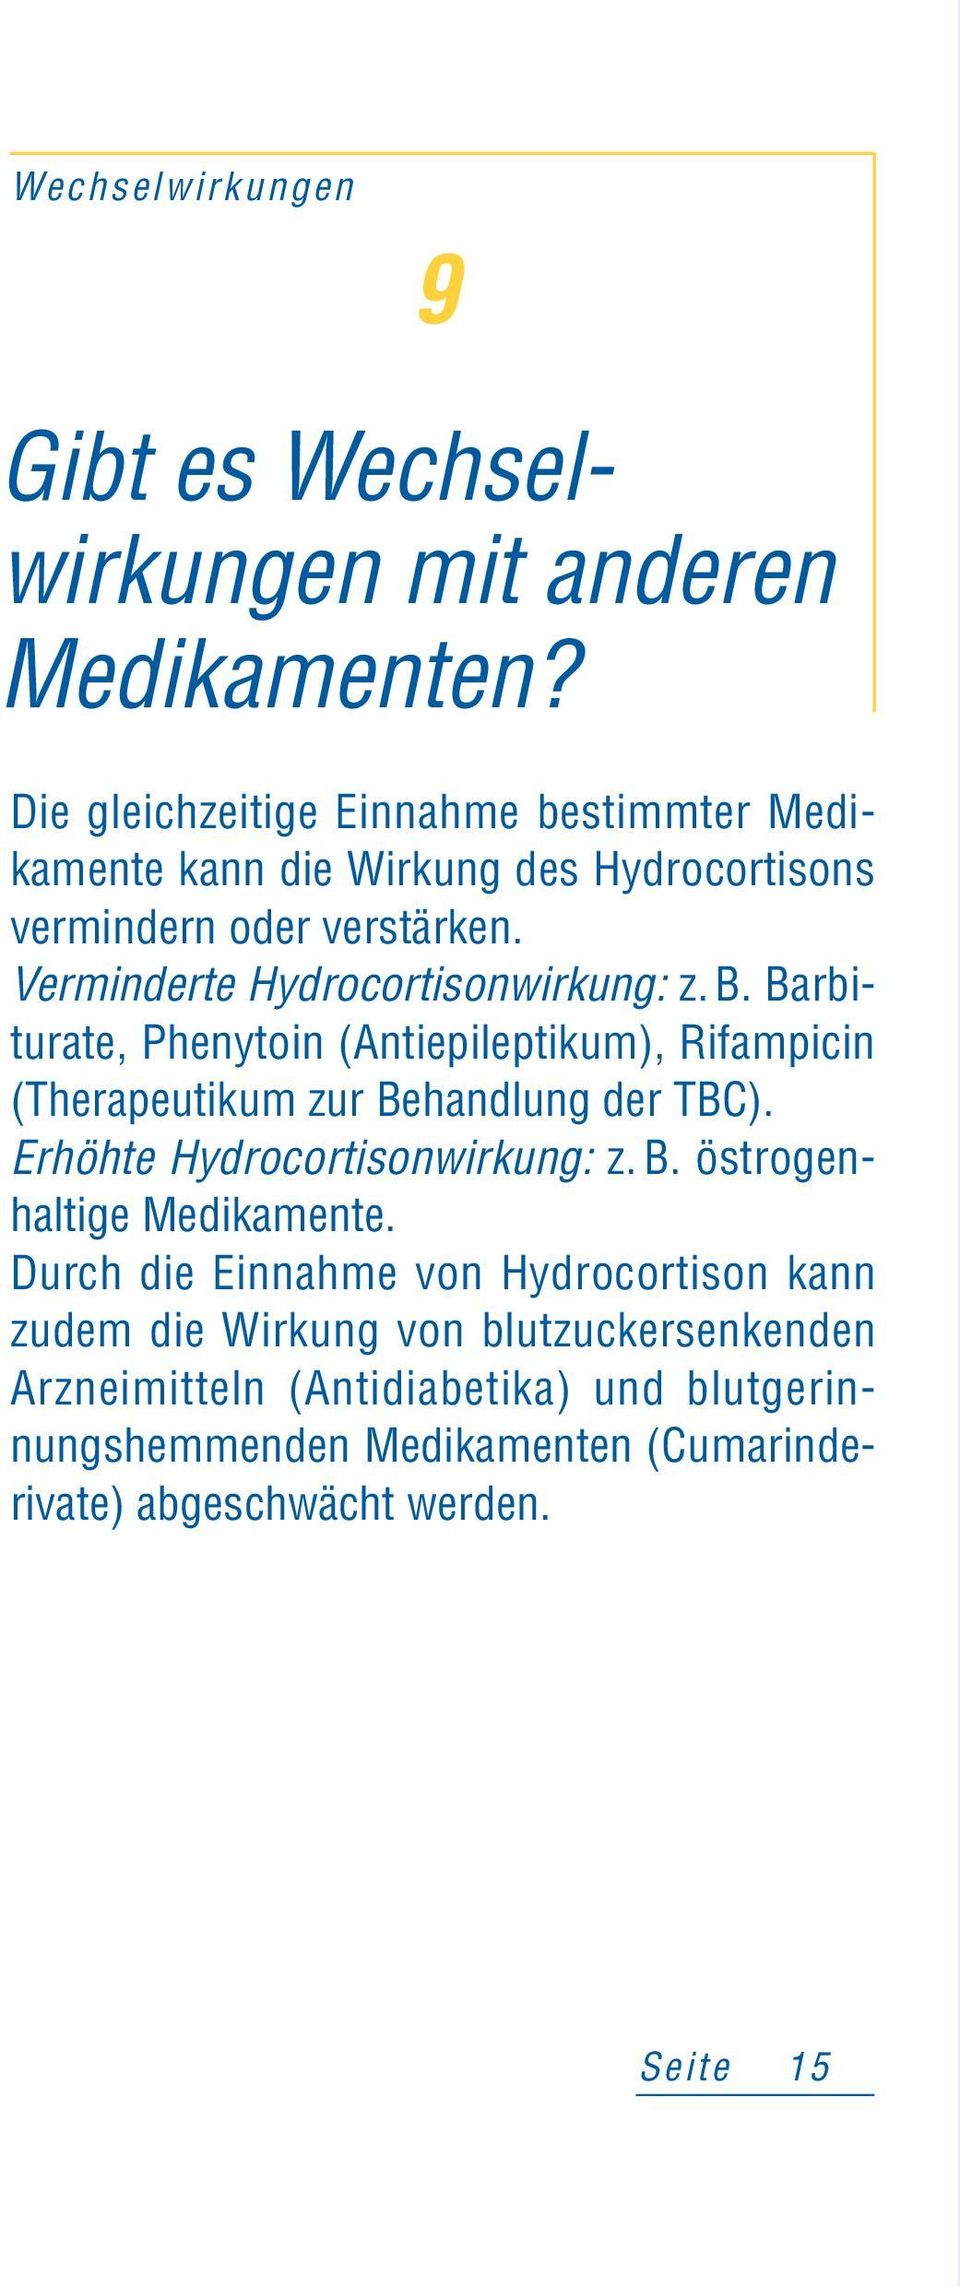 Verminderte Hydrocortisonwirkung: z. B. Barbiturate, Phenytoin (Antiepileptikum), Rifampicin (Therapeutikum zur Behandlung der TBC).